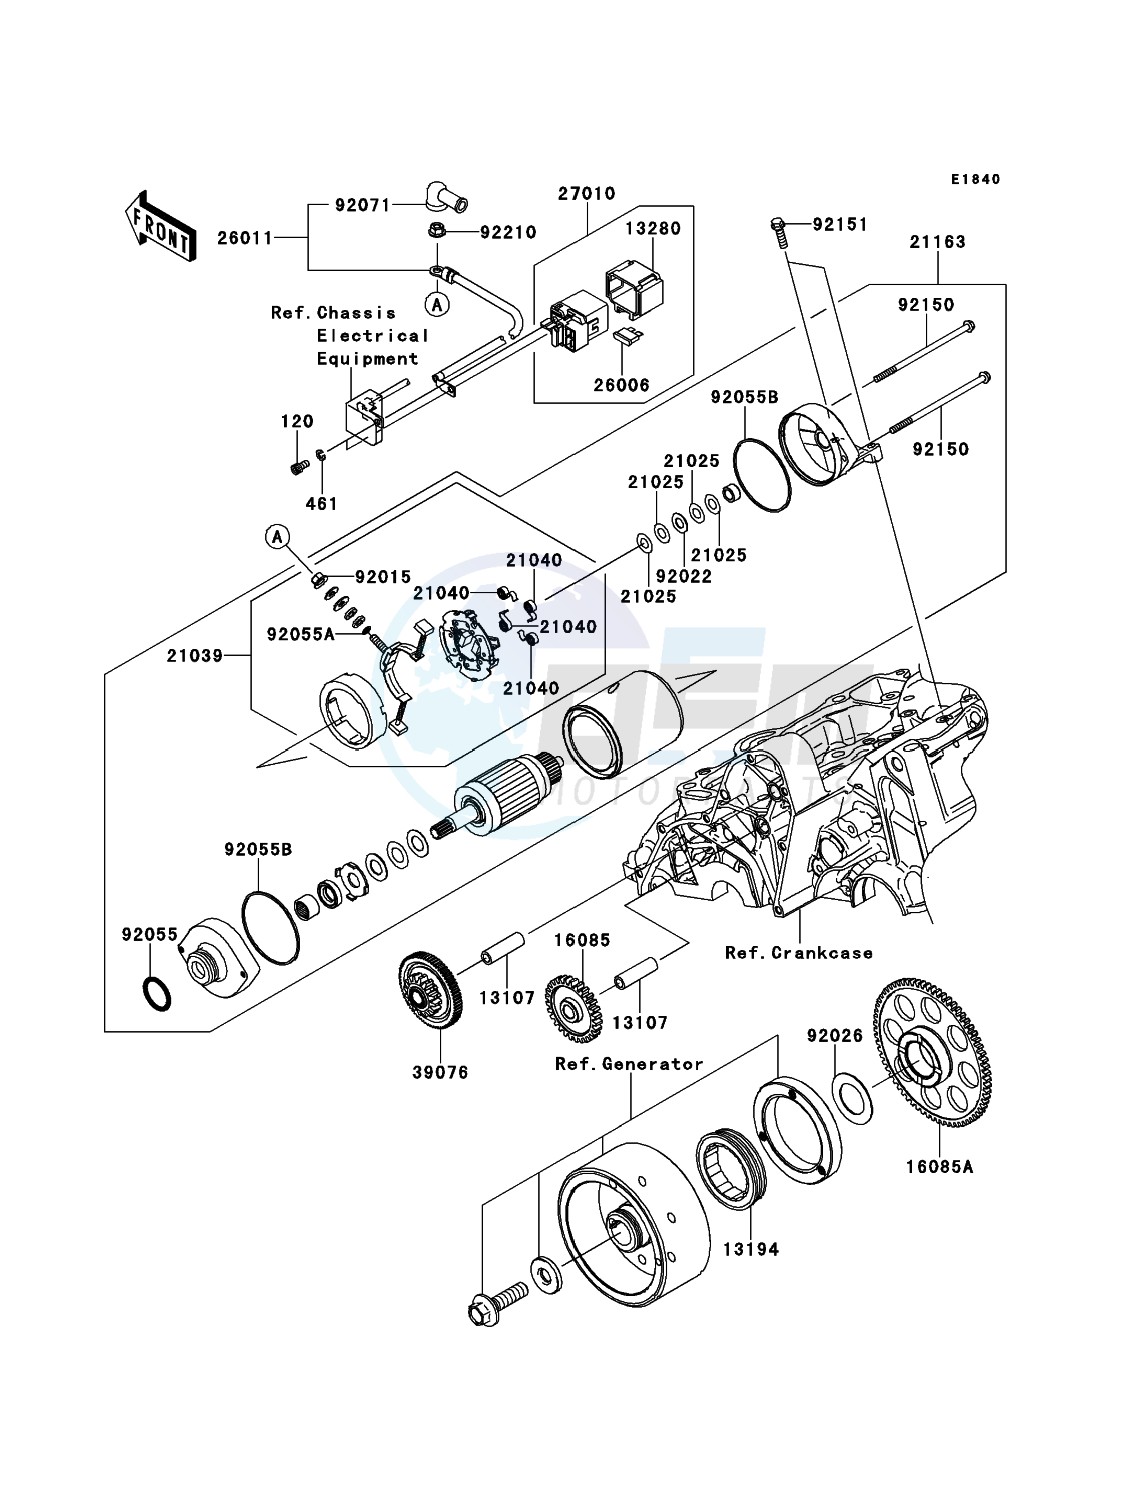 Starter Motor(-ER650AE046804) blueprint